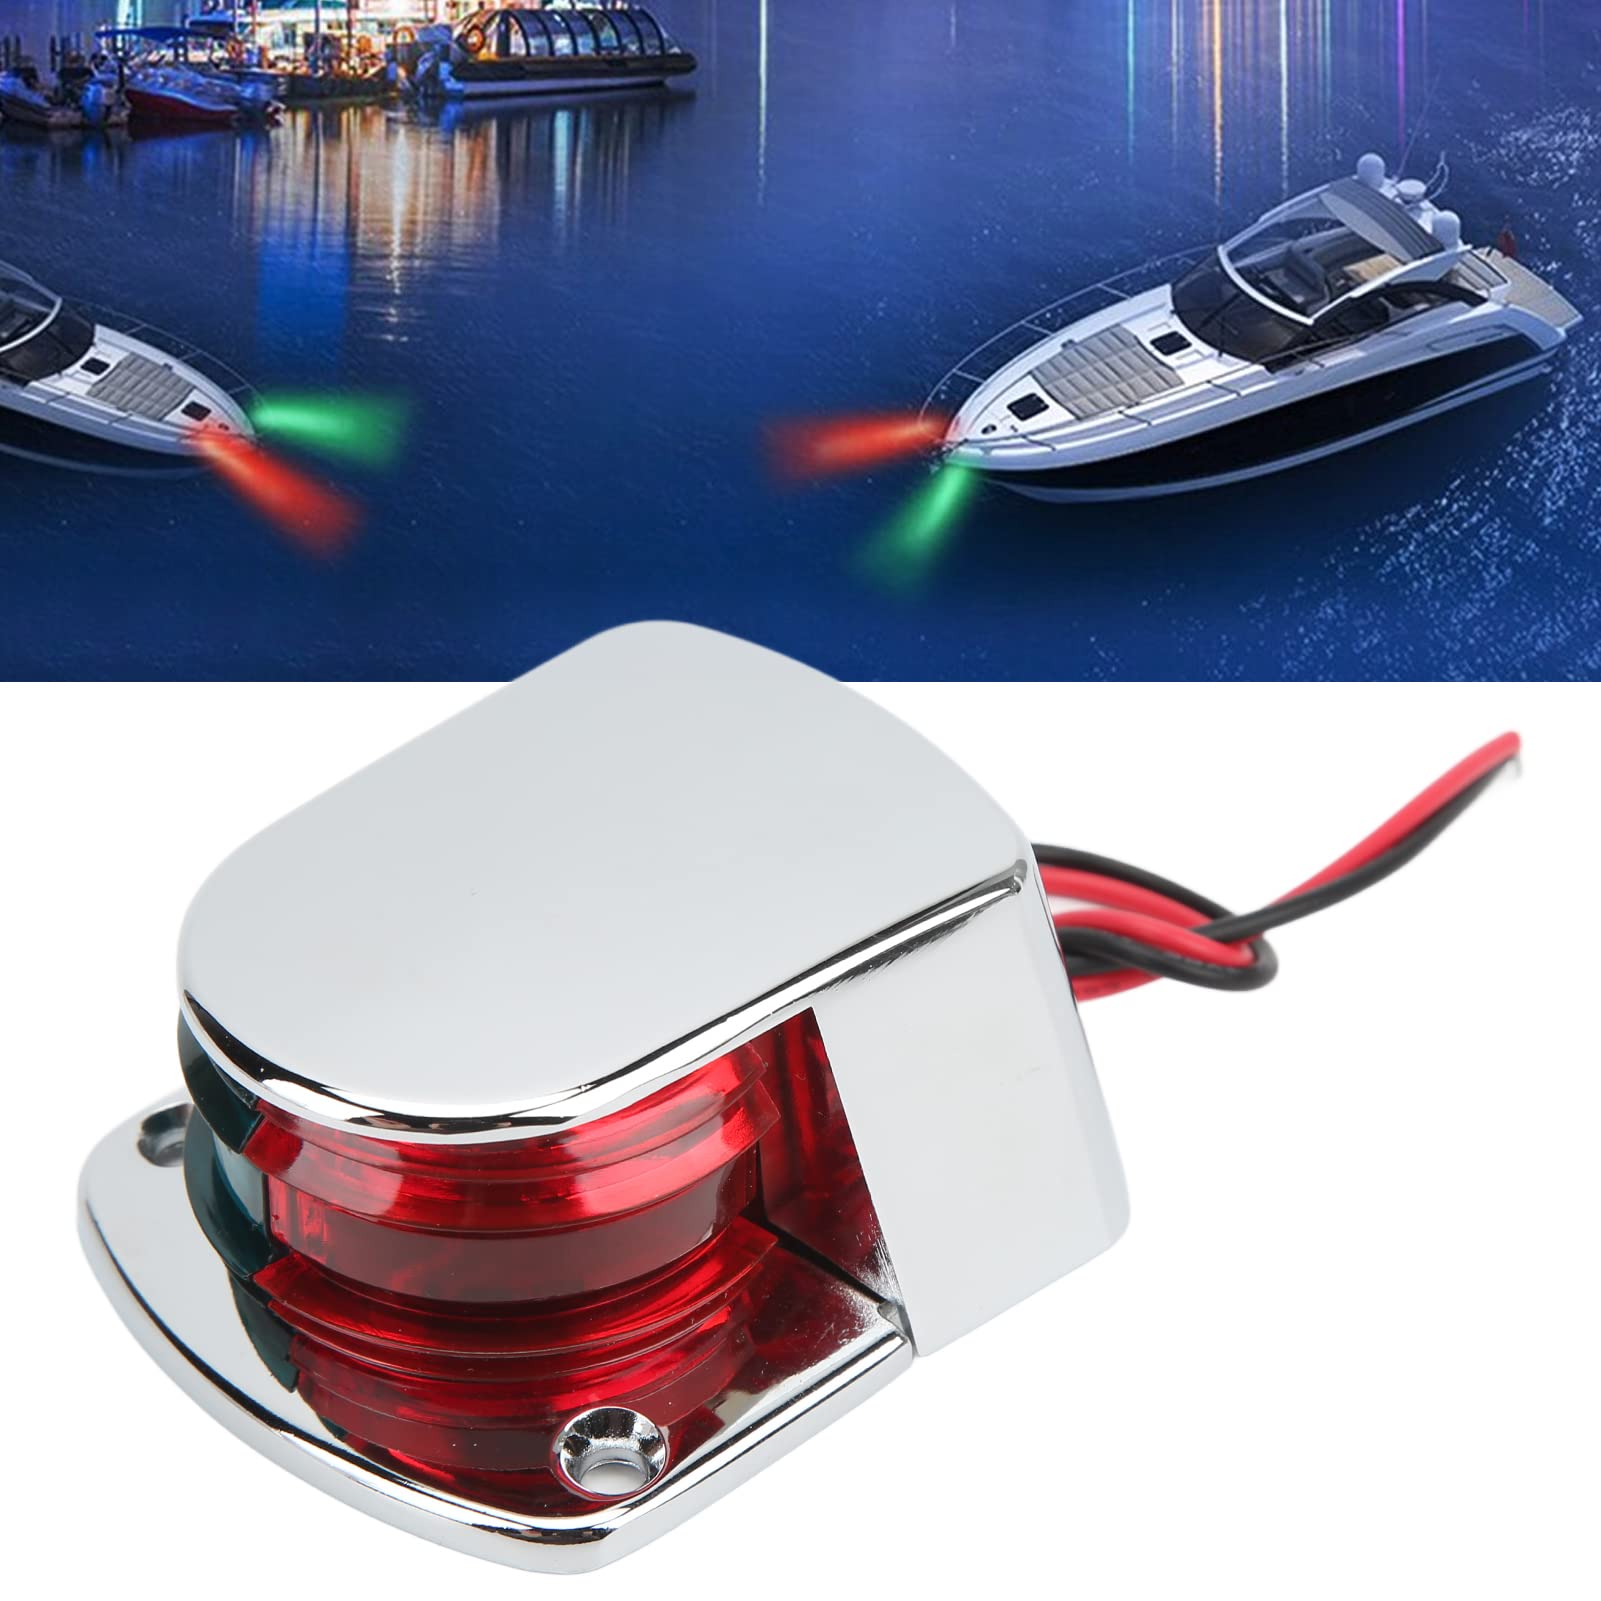 Pasamer Navigationslicht für Boote, LED-Buglicht mit hoher Helligkeit, Gute Wärmeableitung, Energieeinsparung, 1 Meile Sichtbarkeit für Yacht, Segelboot, Motorboot von Pasamer